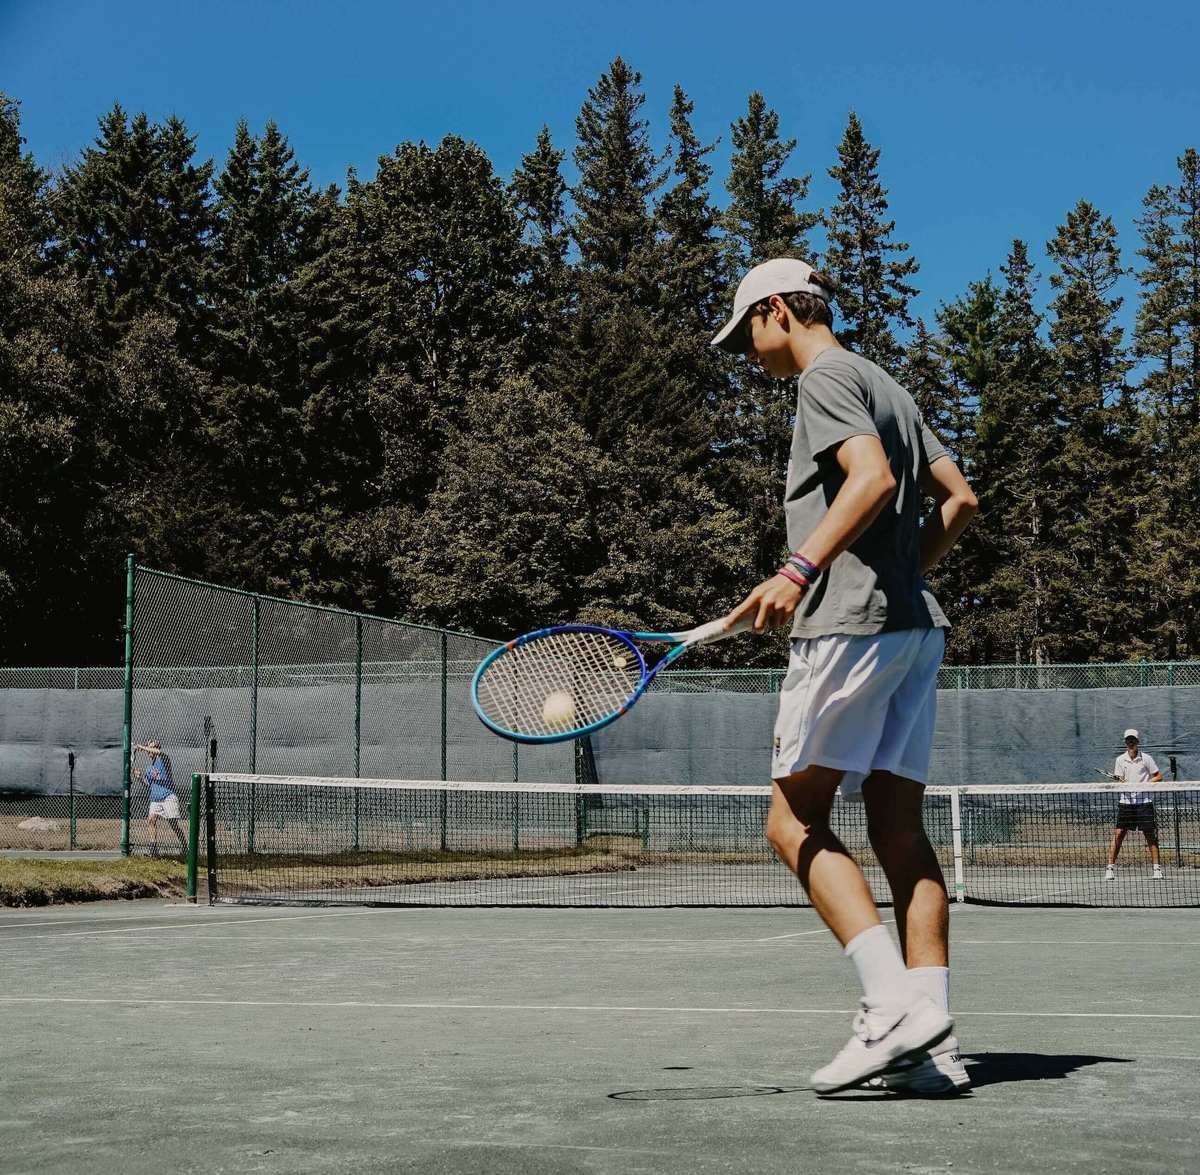 Теннис игра любителей. Теннисный корт. Теннис корт. Большой теннис корт. Теннисный корт уличный.